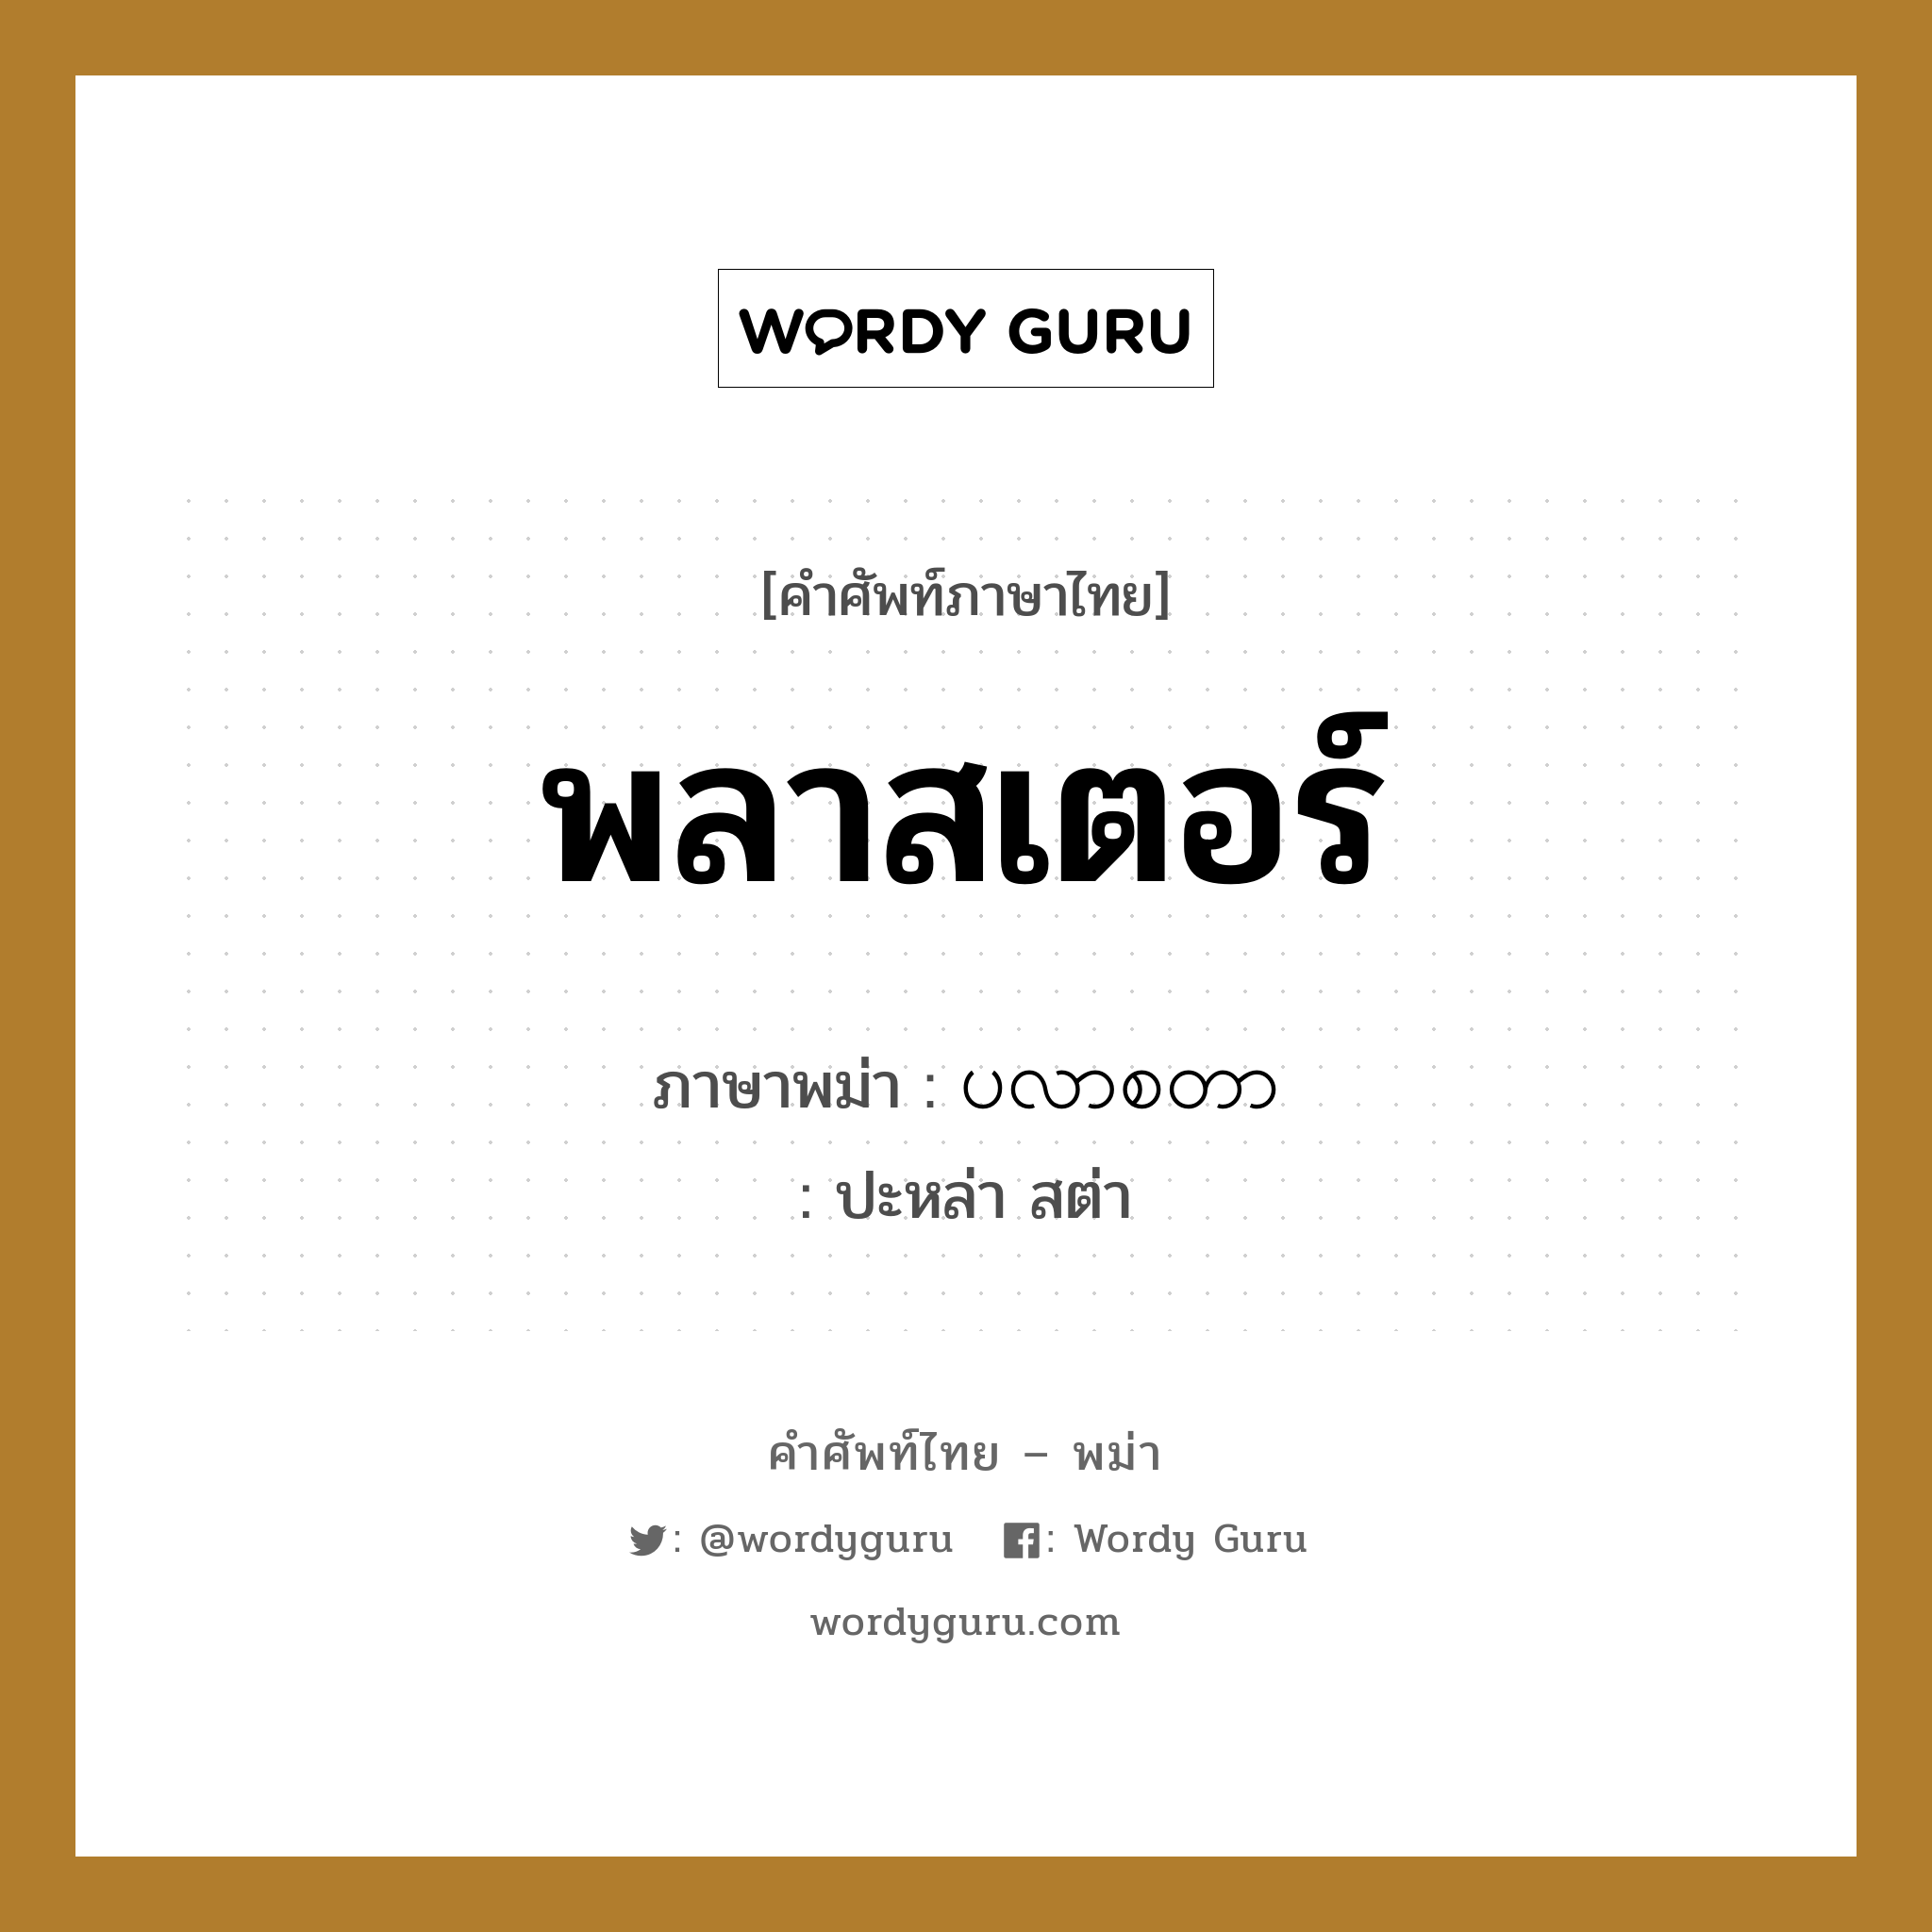 พลาสเตอร์ ภาษาพม่าคืออะไร, คำศัพท์ภาษาไทย - พม่า พลาสเตอร์ ภาษาพม่า ပလာစတာ หมวด หมวดโรคและยารักษา ปะหล่า สต่า หมวด หมวดโรคและยารักษา